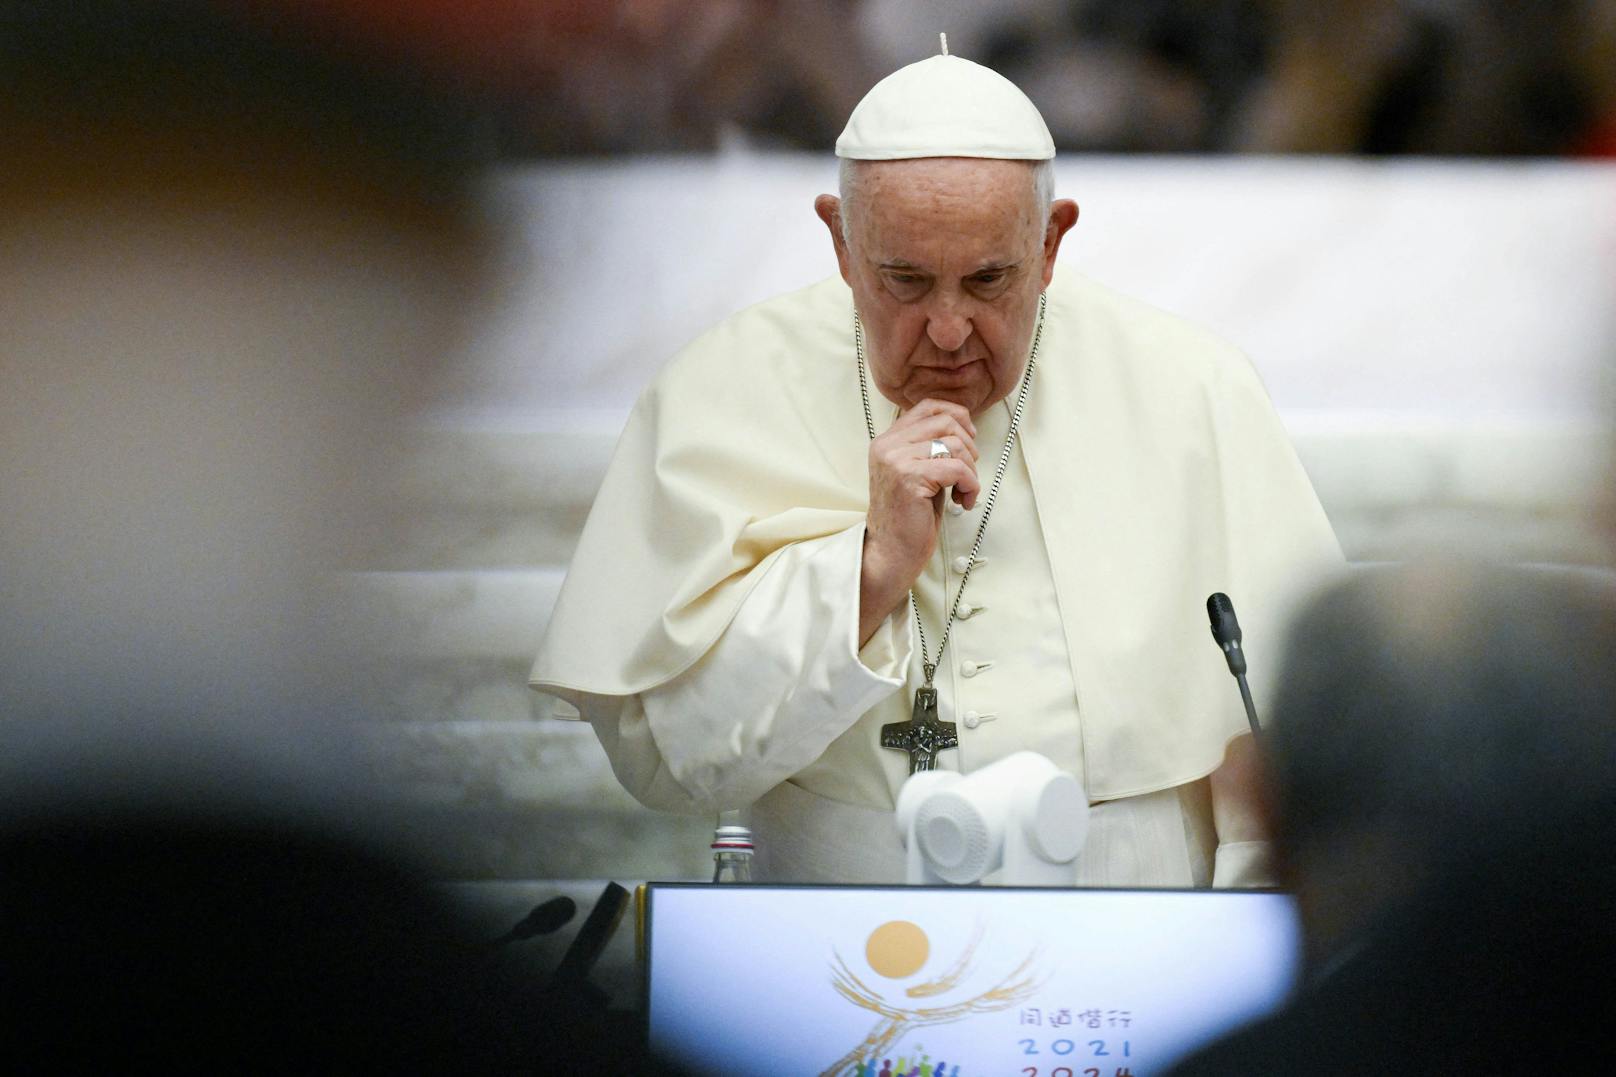  "Welt zerbröckelt" – Papst richtet mahnende Worte an alle